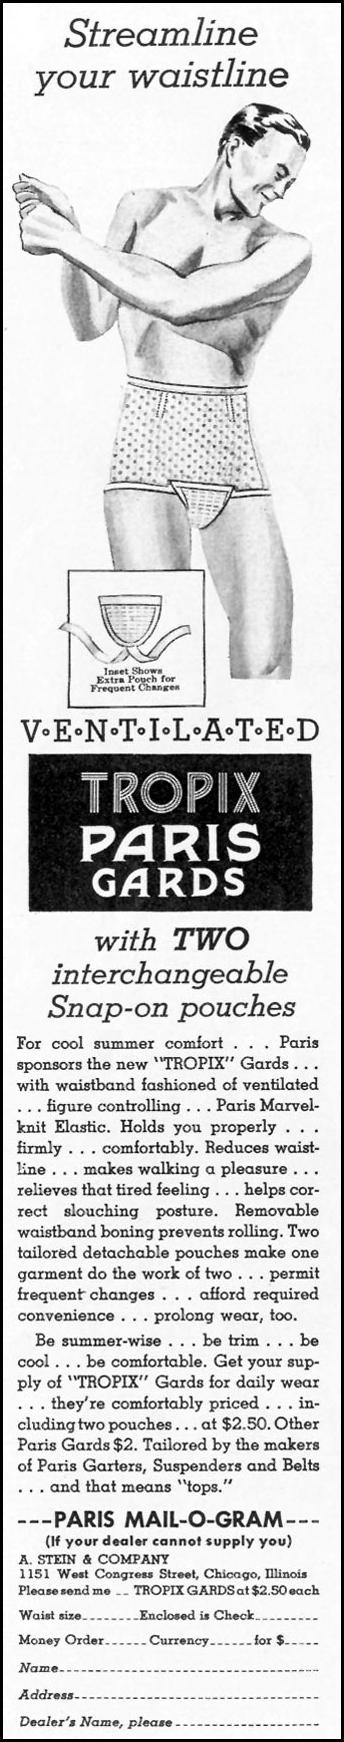 PARIS TROPIX GARDS MEN'S UNDERWEAR
LIFE
07/26/1937
p. 94